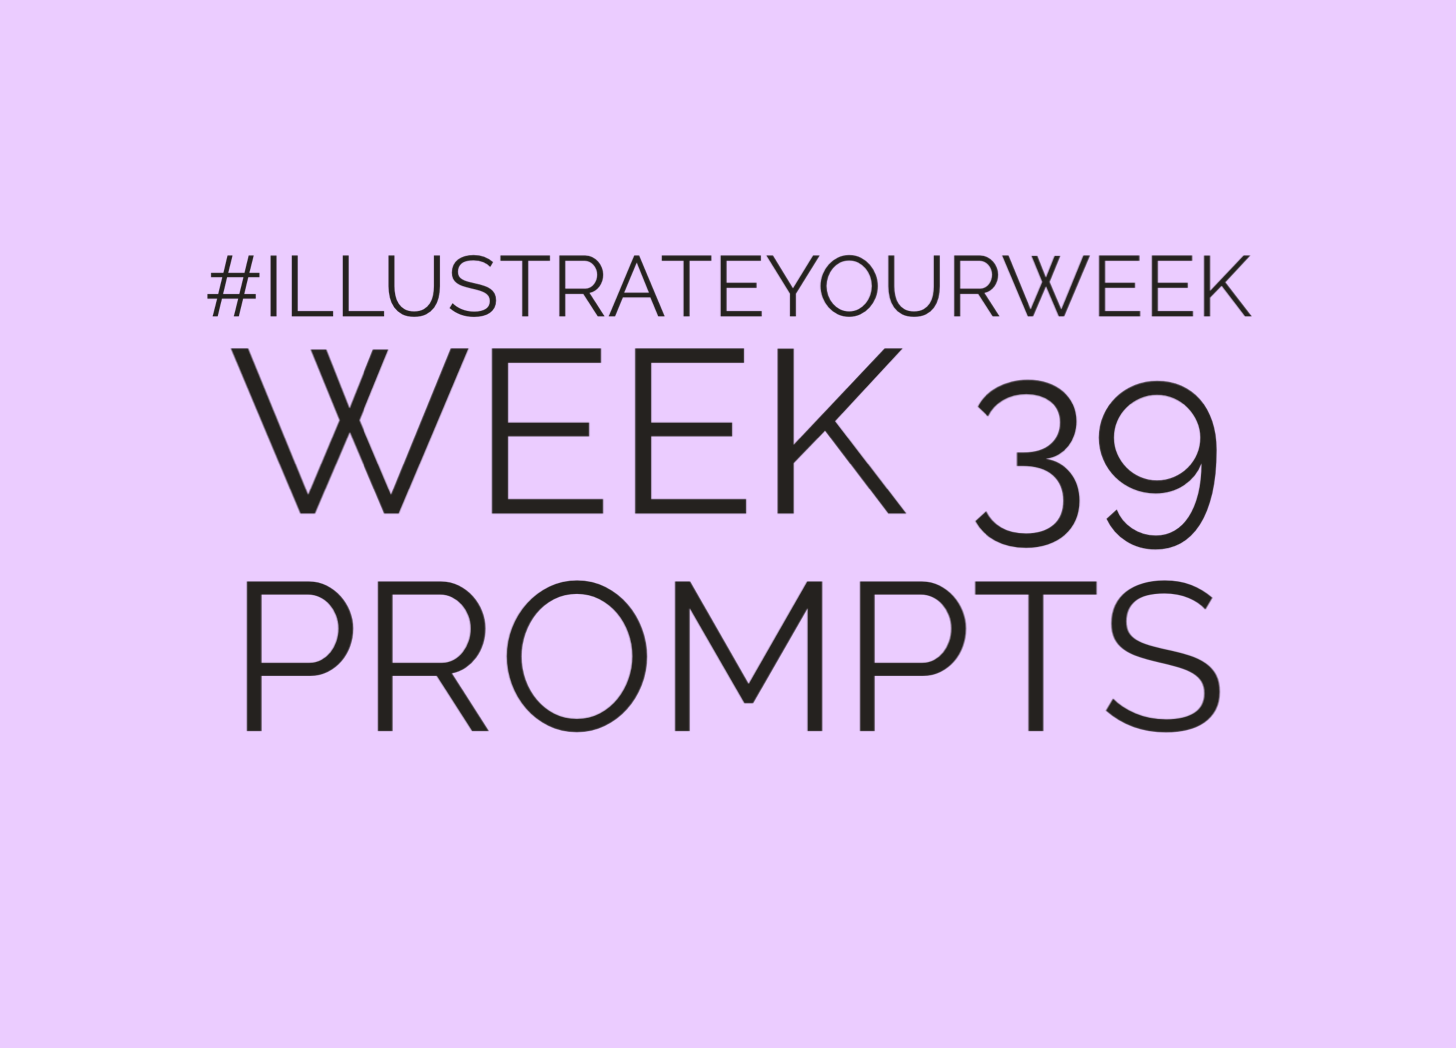 Week 39 of Illustrate Your Week